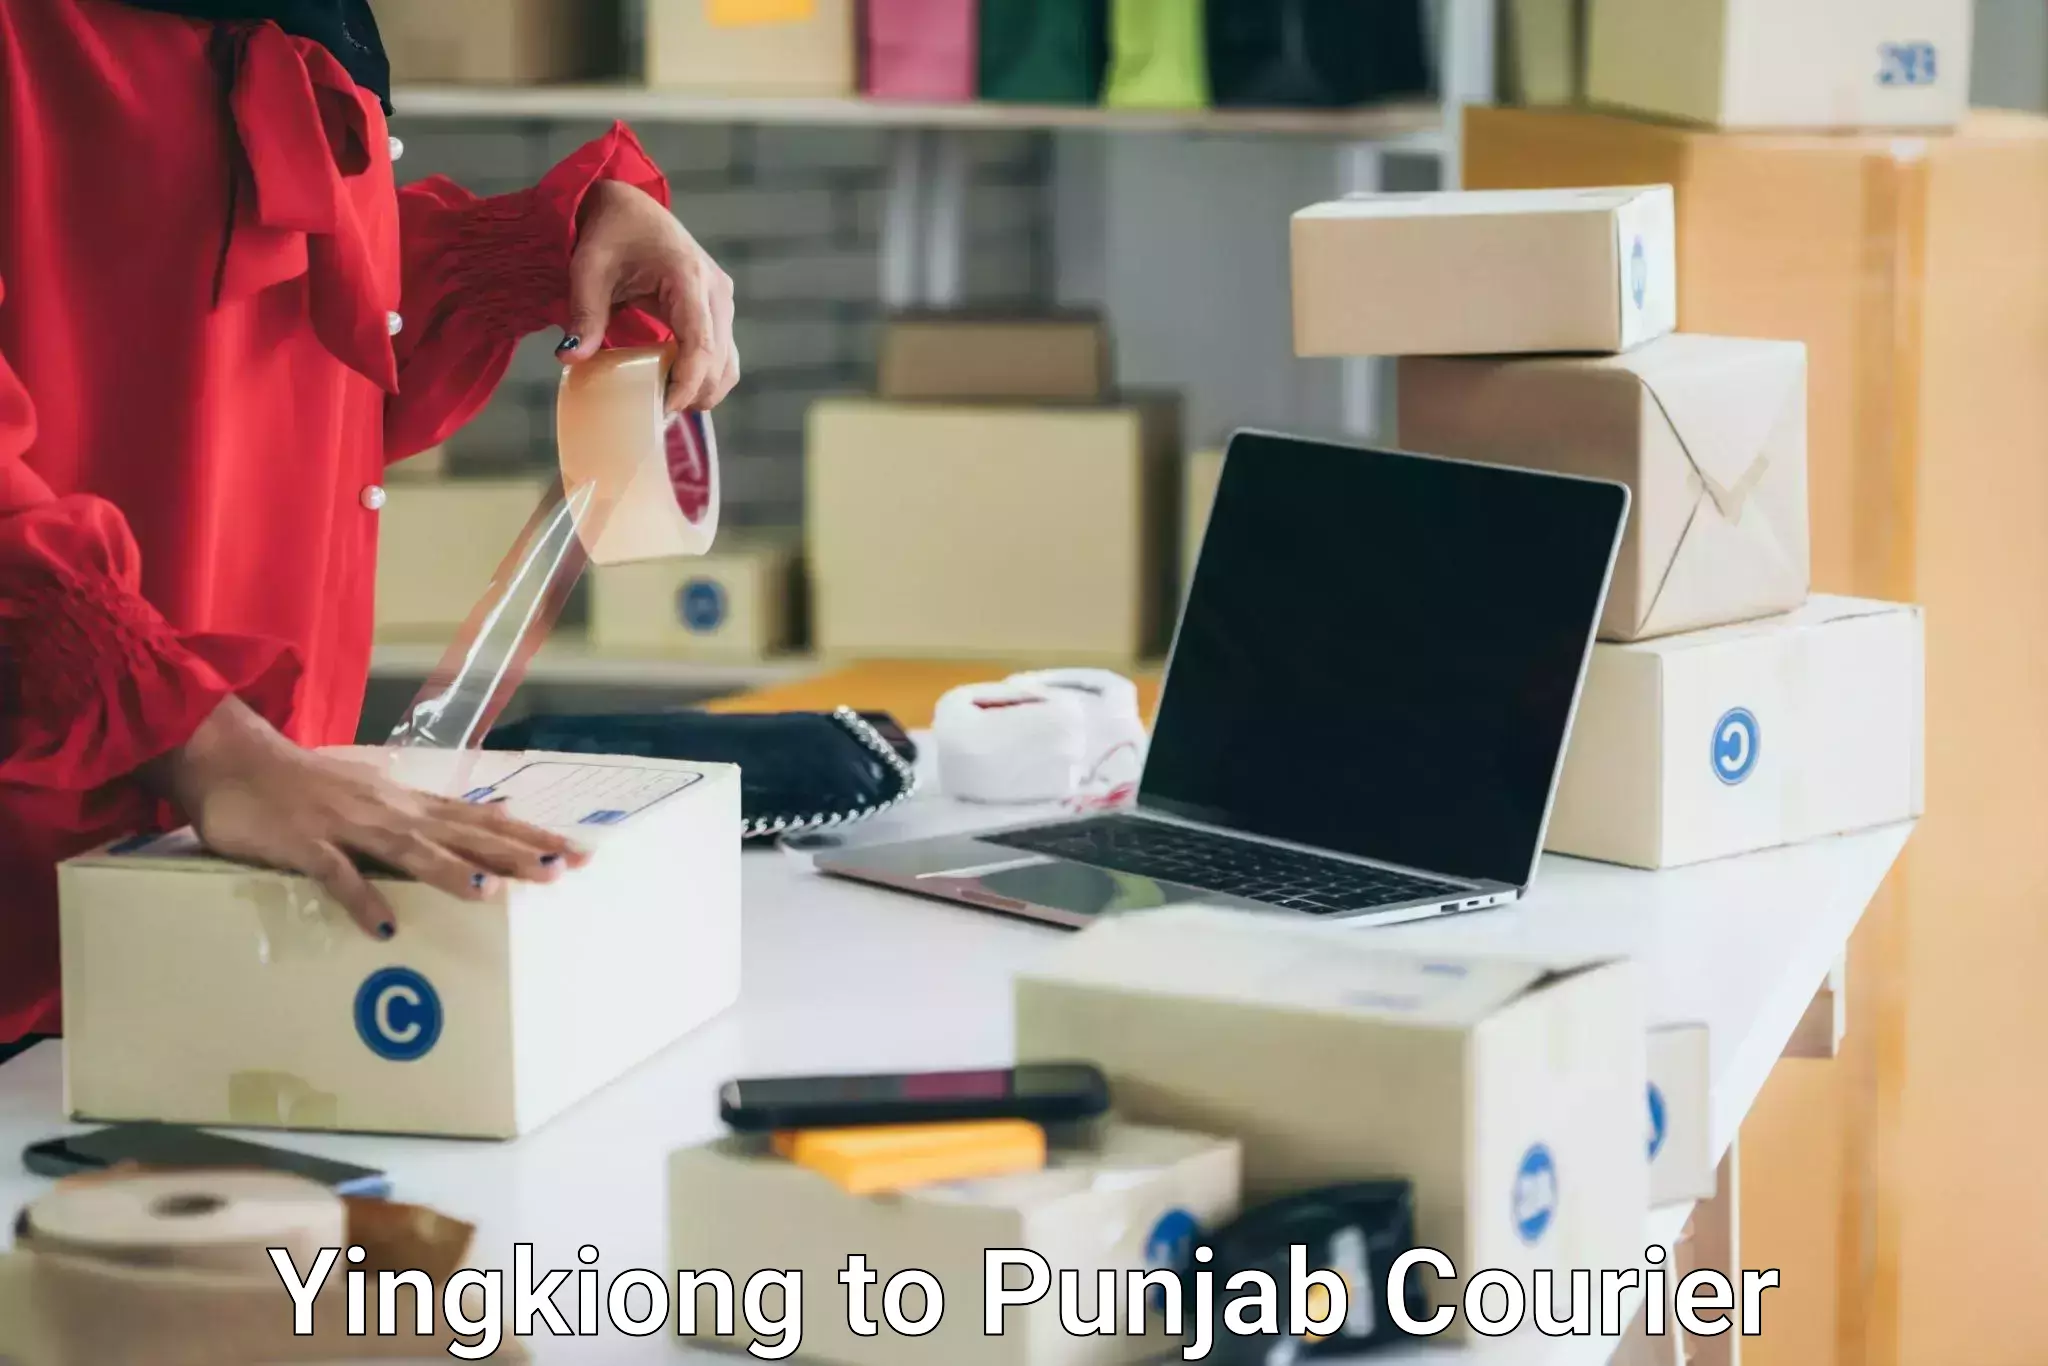 Custom moving plans Yingkiong to Central University of Punjab Bathinda